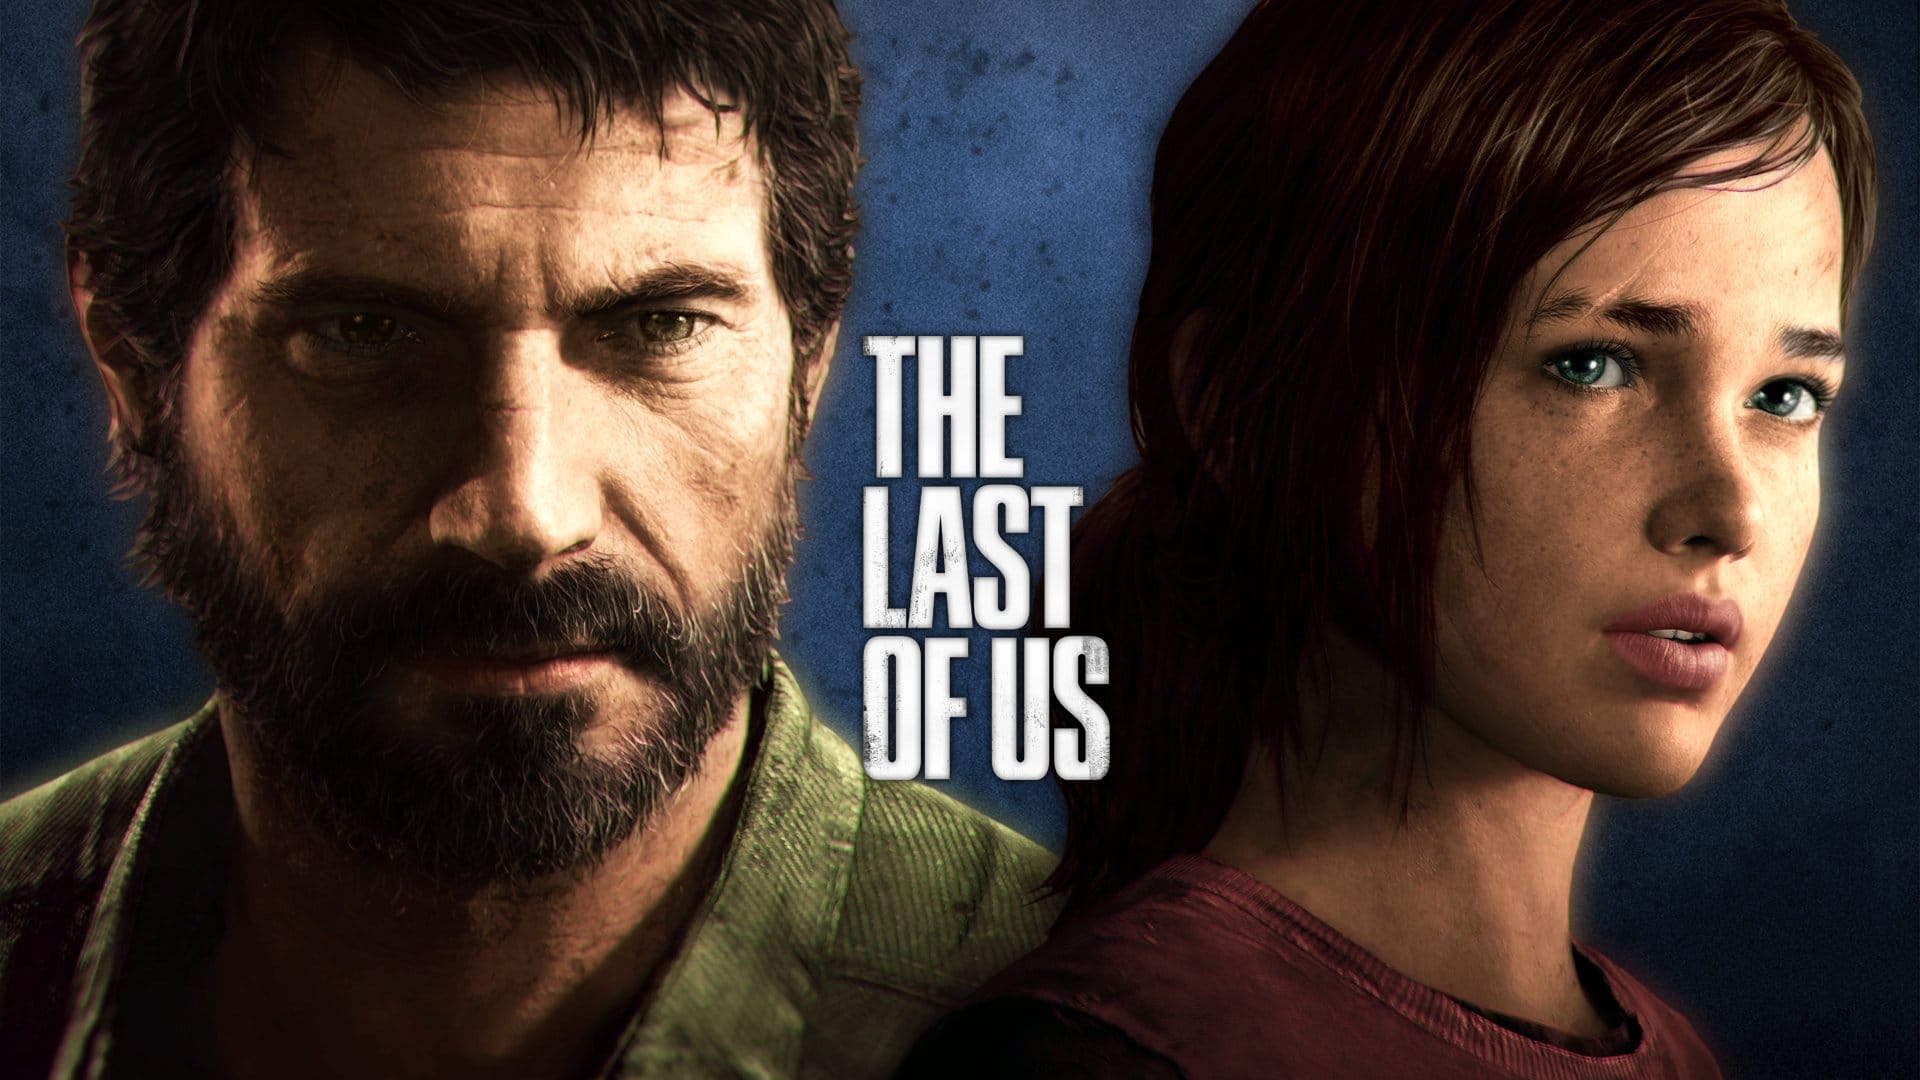 The Last of Us | Adaptação do jogo pela HBO inicia suas filmagens e já possui 1ª imagem oficial